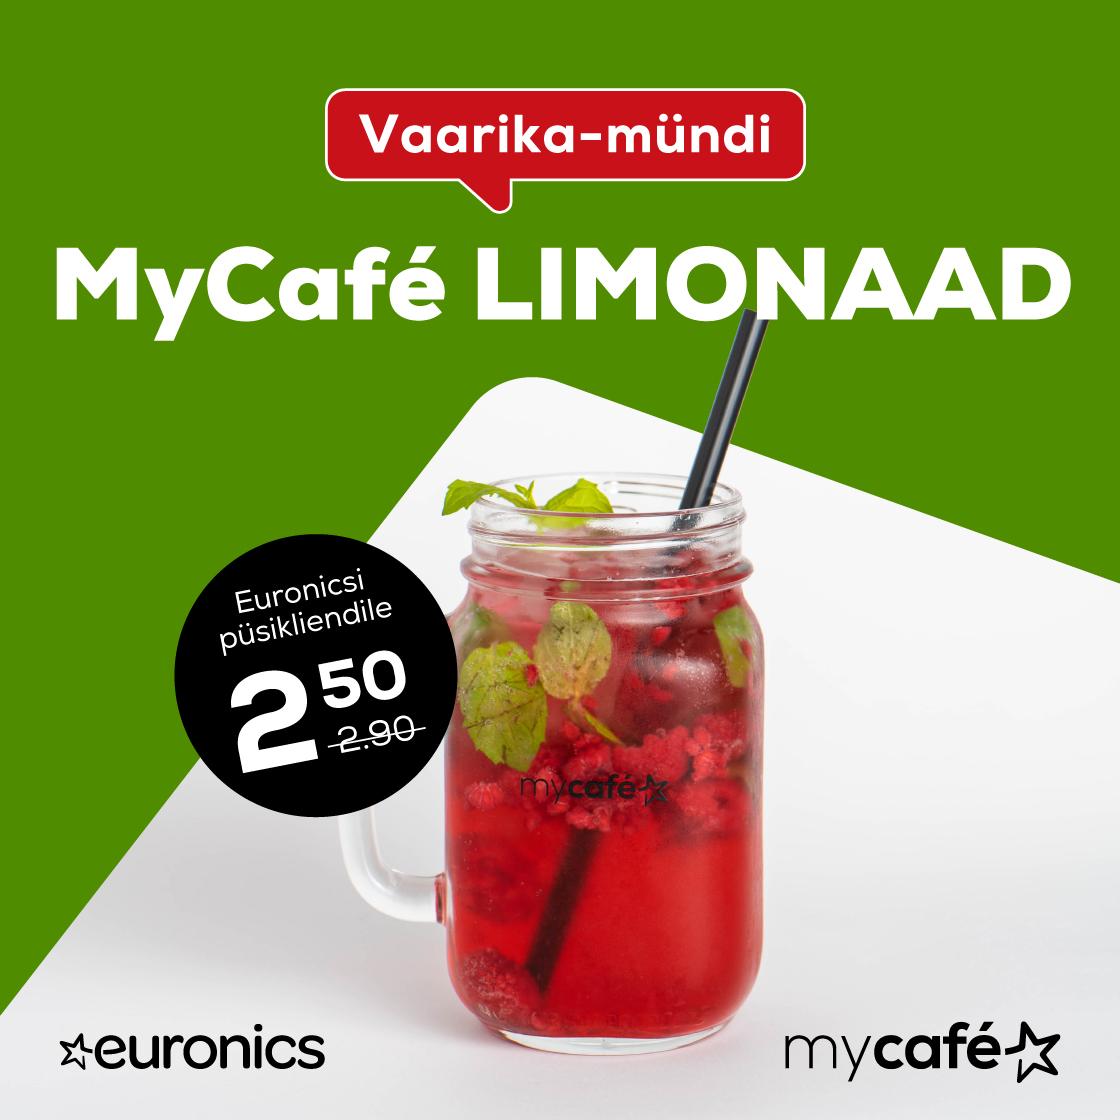 MyCafé augustikuu pakkumine - Euronics MyCafé